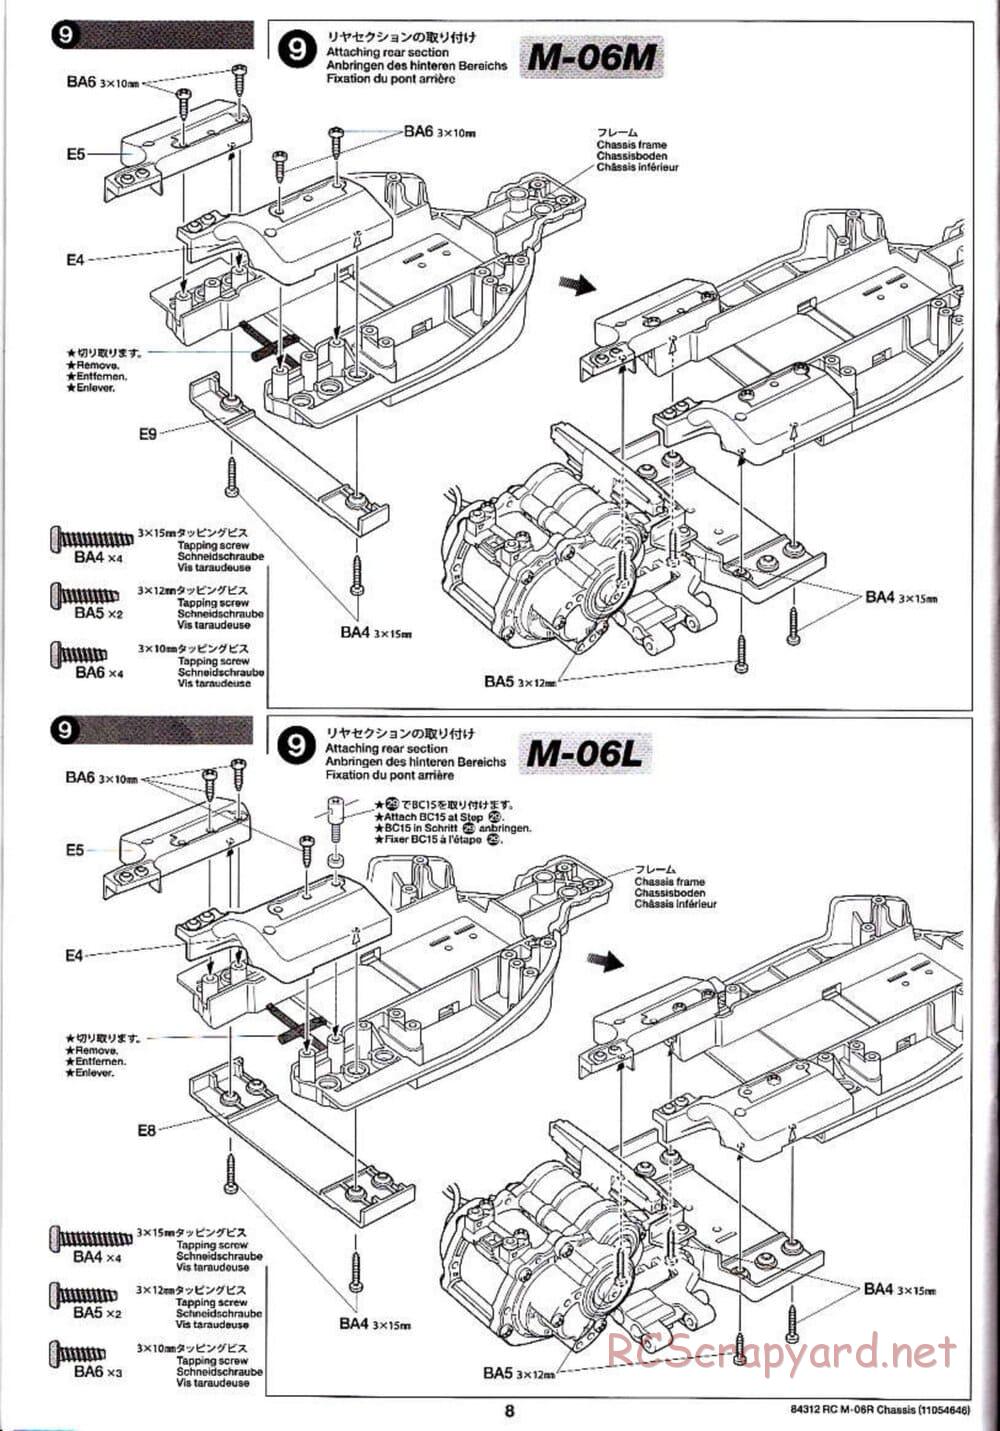 Tamiya - M-06R Chassis - Manual - Page 8